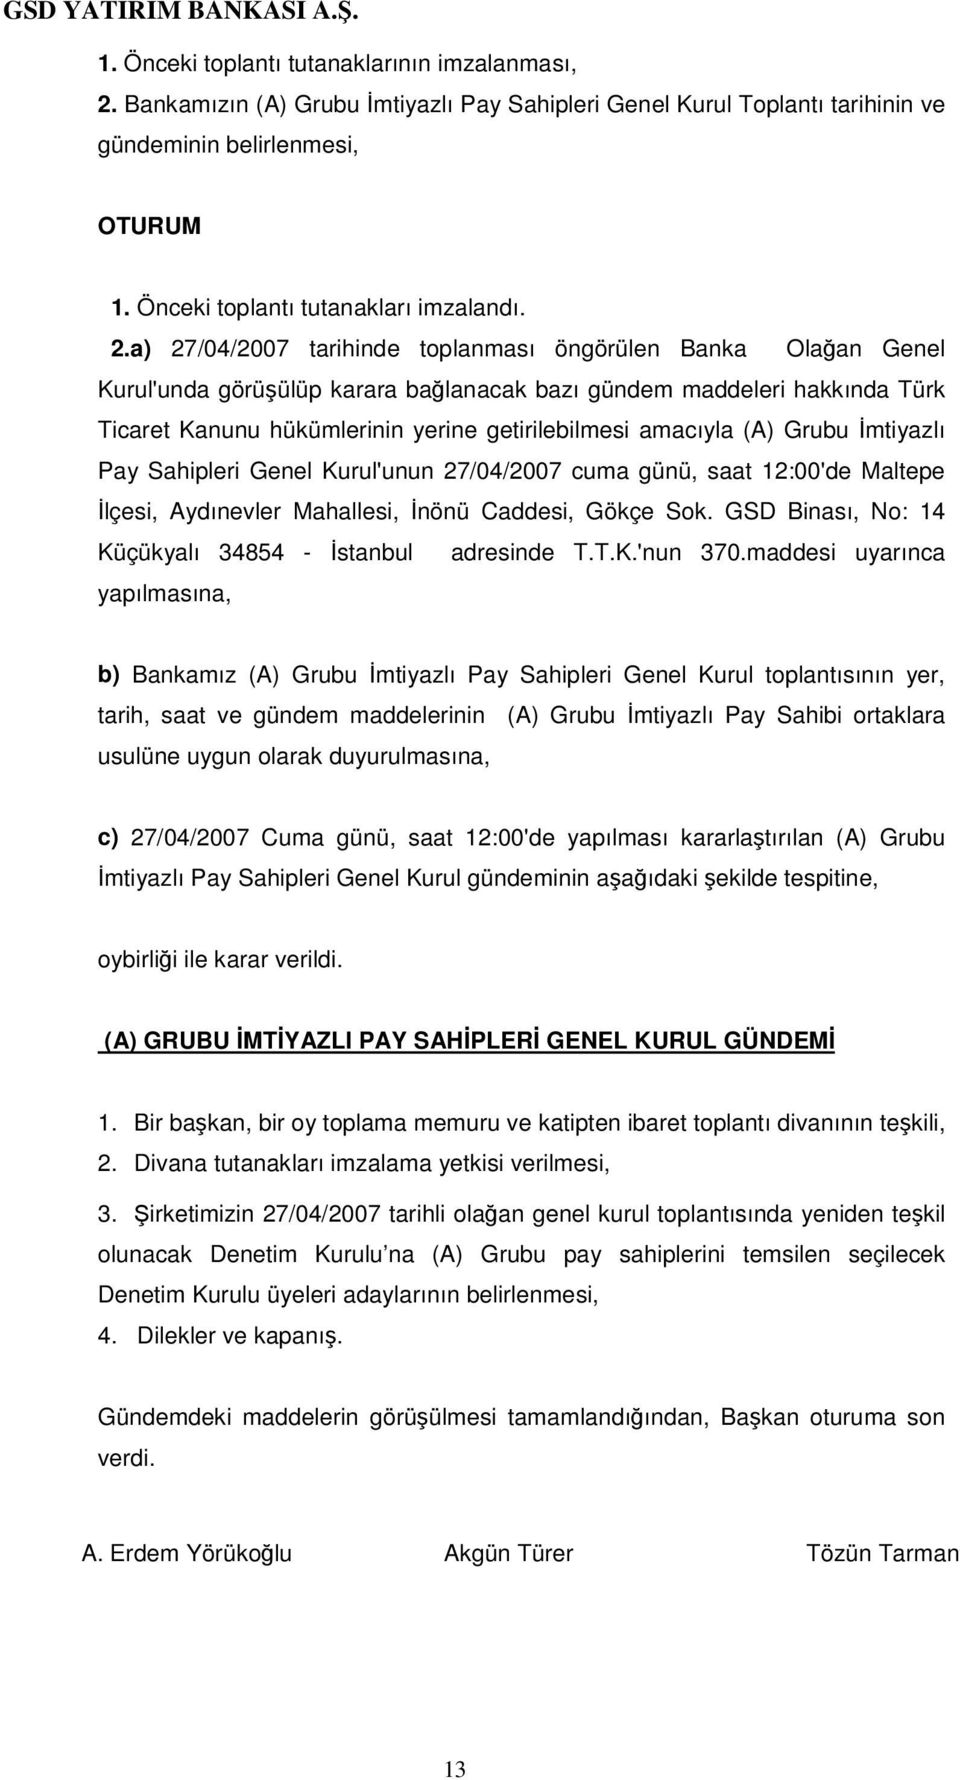 a) 27/04/2007 tarihinde toplanması öngörülen Banka Olaan Genel Kurul'unda görüülüp karara balanacak bazı gündem maddeleri hakkında Türk Ticaret Kanunu hükümlerinin yerine getirilebilmesi amacıyla (A)